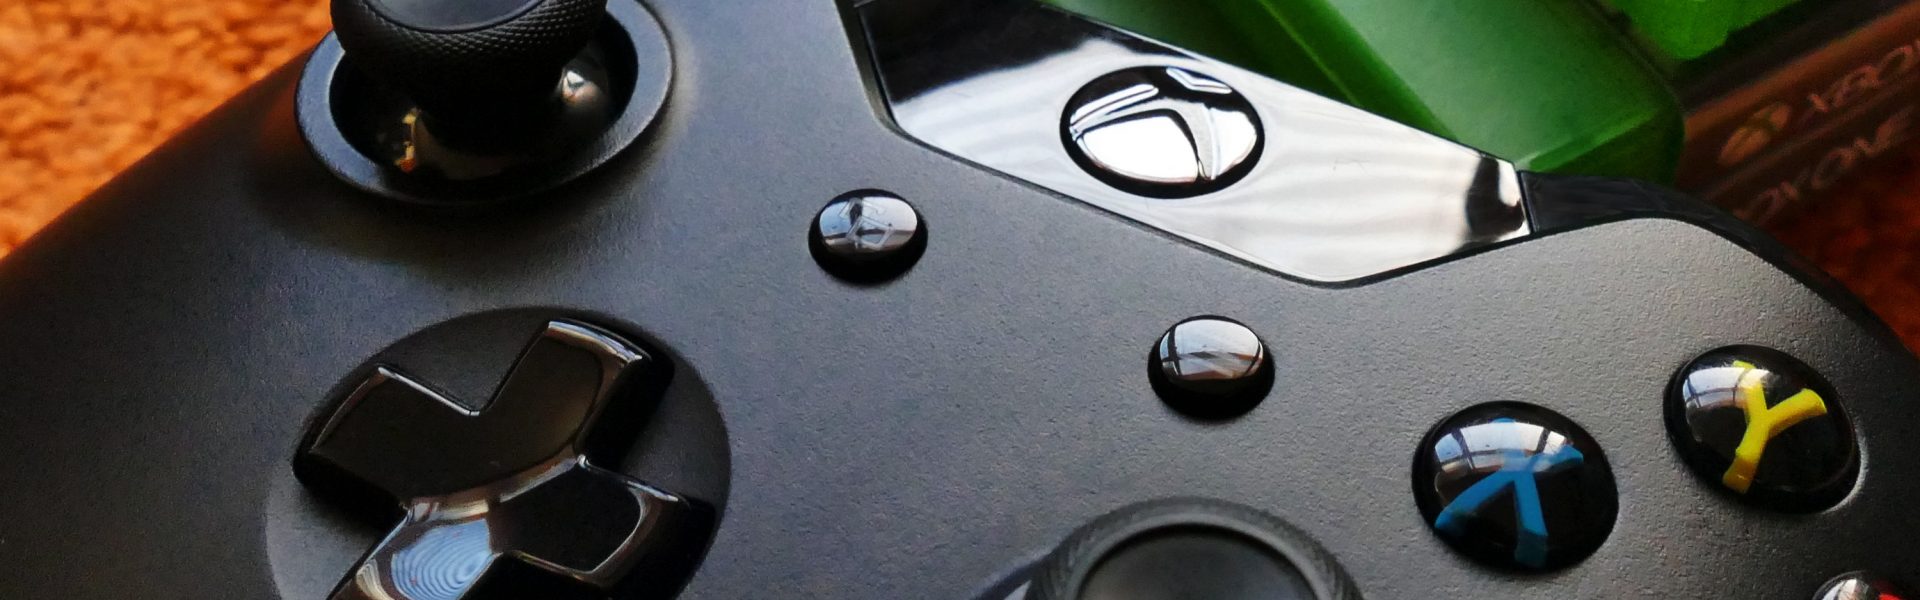 Jak skonfigurować Xbox One?